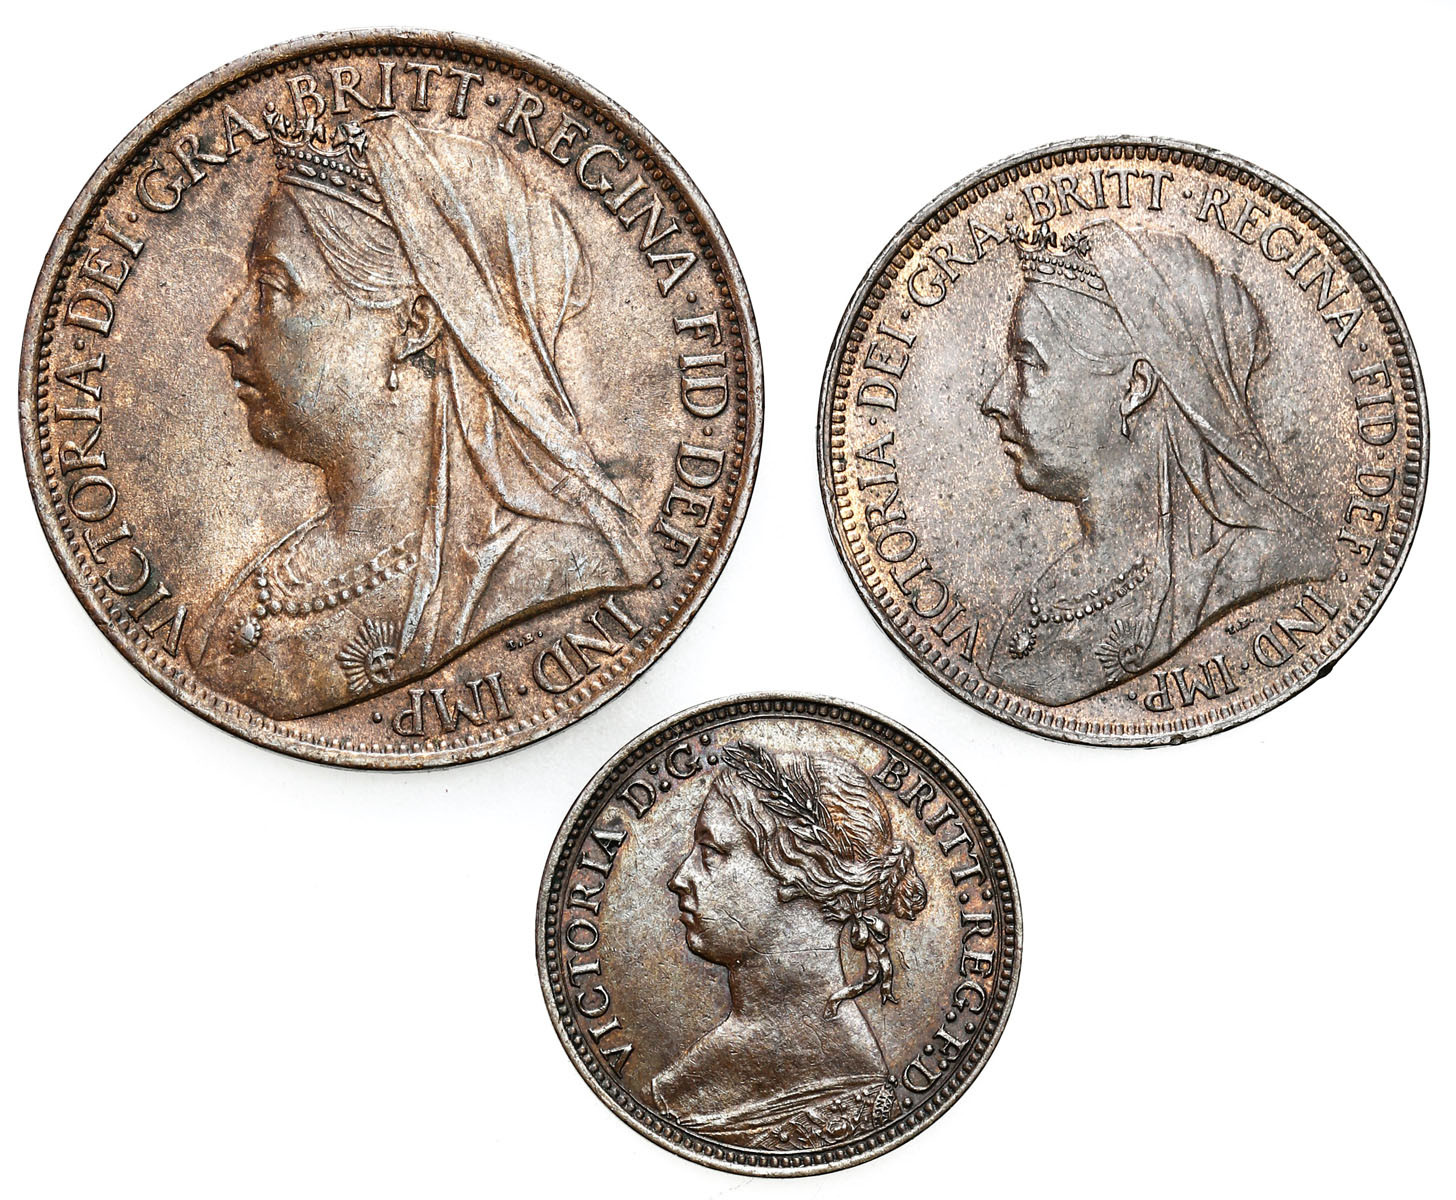 Wielka Brytania. Farthing 1878, 1/2 penny 1901, penny 1901, zestaw 3 monet - ŁADNE